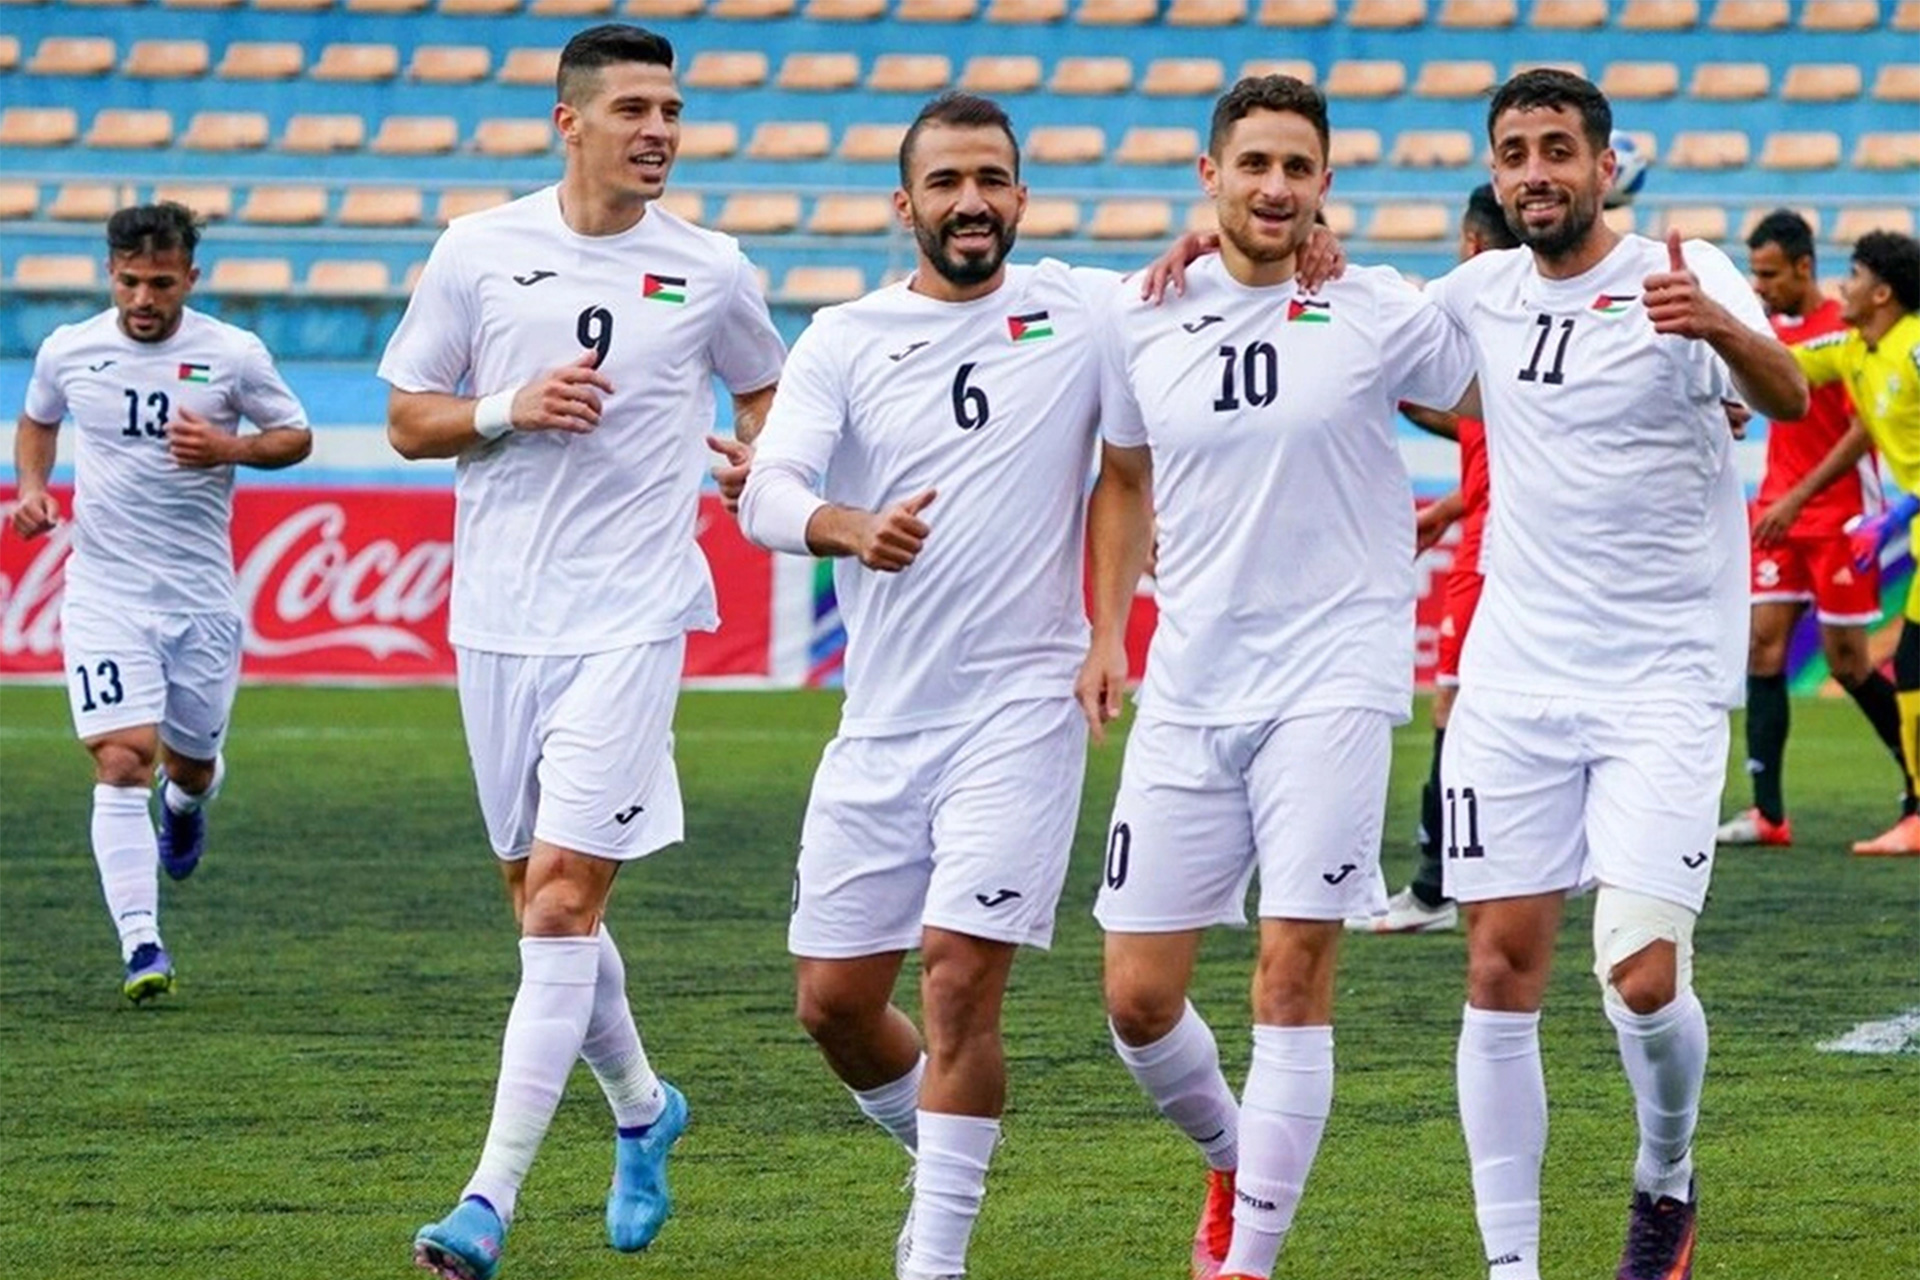 العدوان الإسرائيلي يجبر منتخبي فلسطين ولبنان على بدء تصفيات مونديال 2026 خارج ملعبهما | رياضة – البوكس نيوز